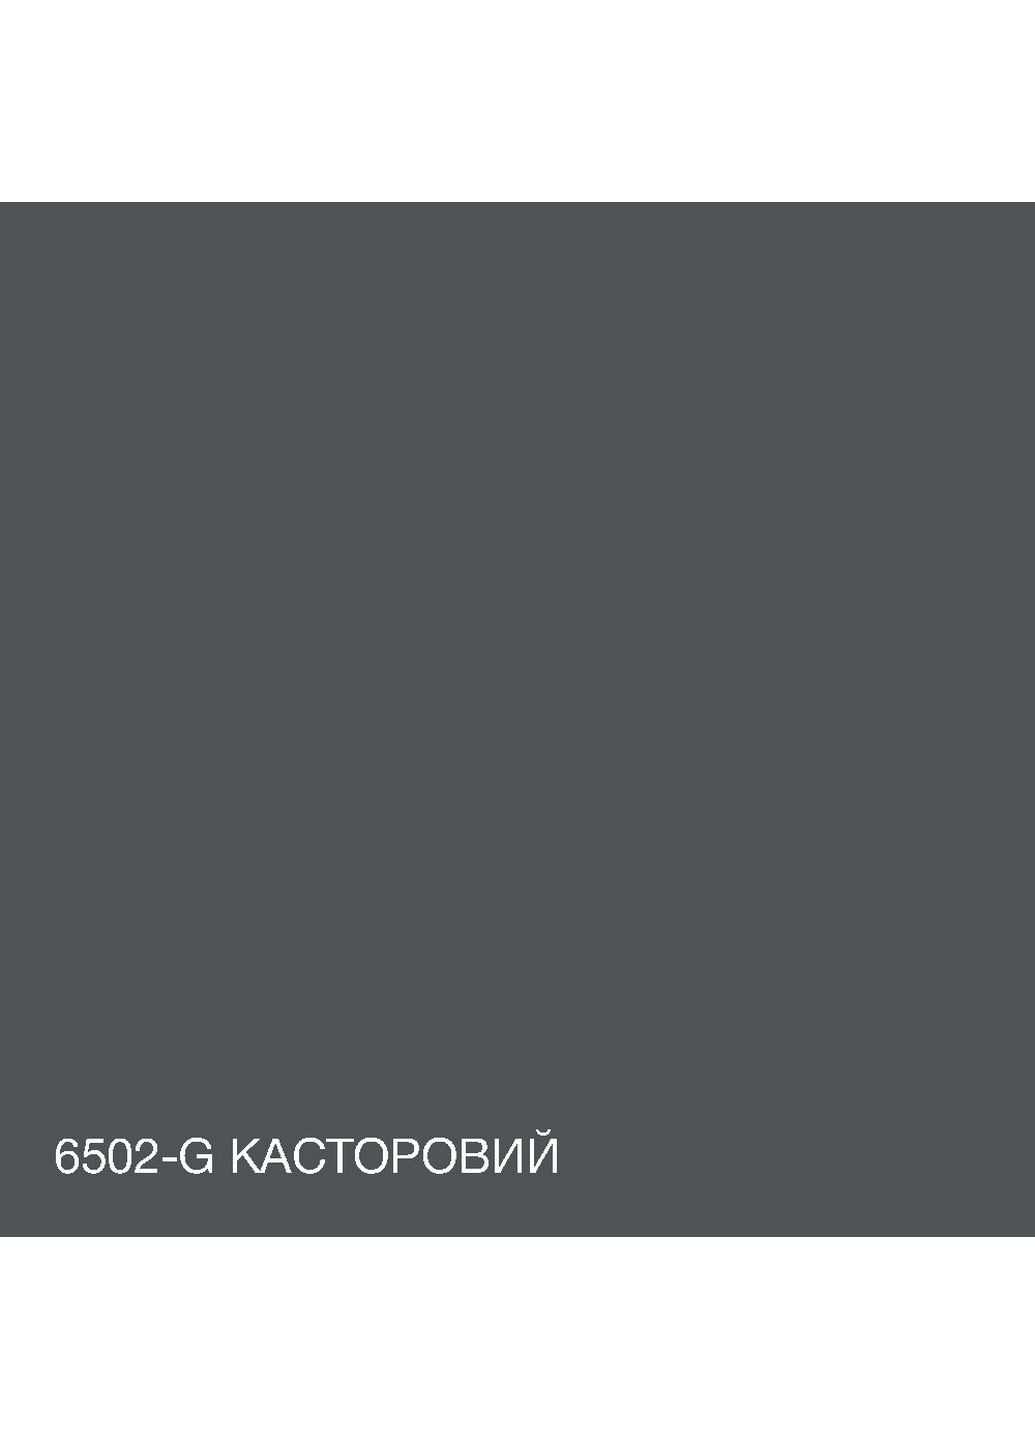 Интерьерная латексная краска 6502-G 3 л SkyLine (283326108)